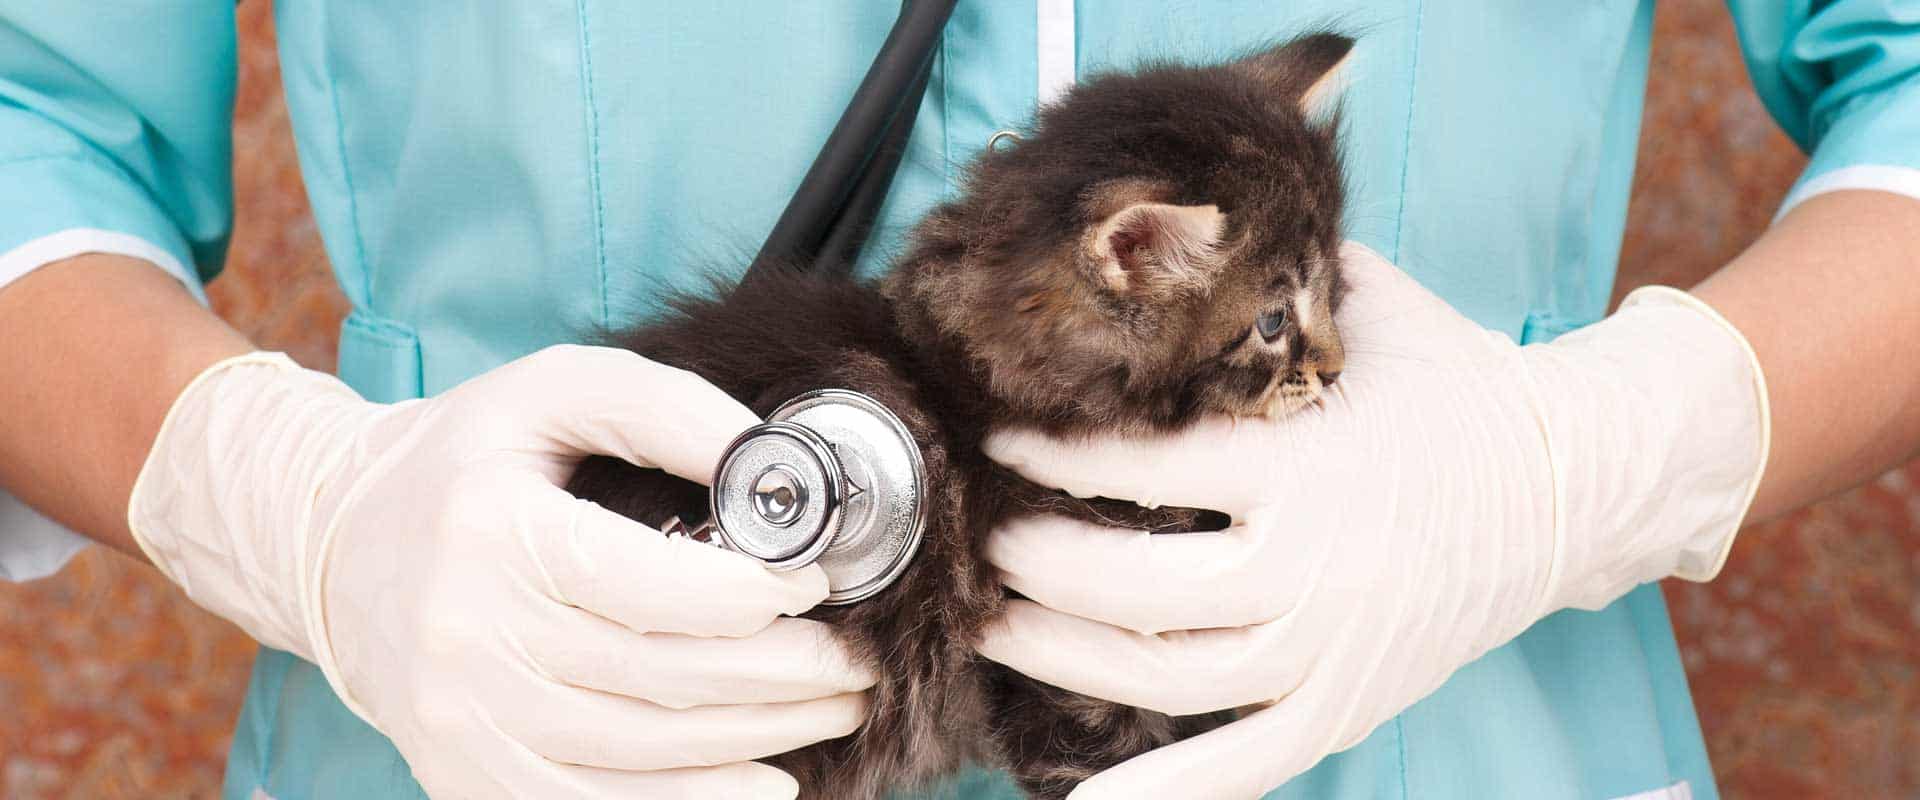 vet technician holding stethoscope to kitten's back